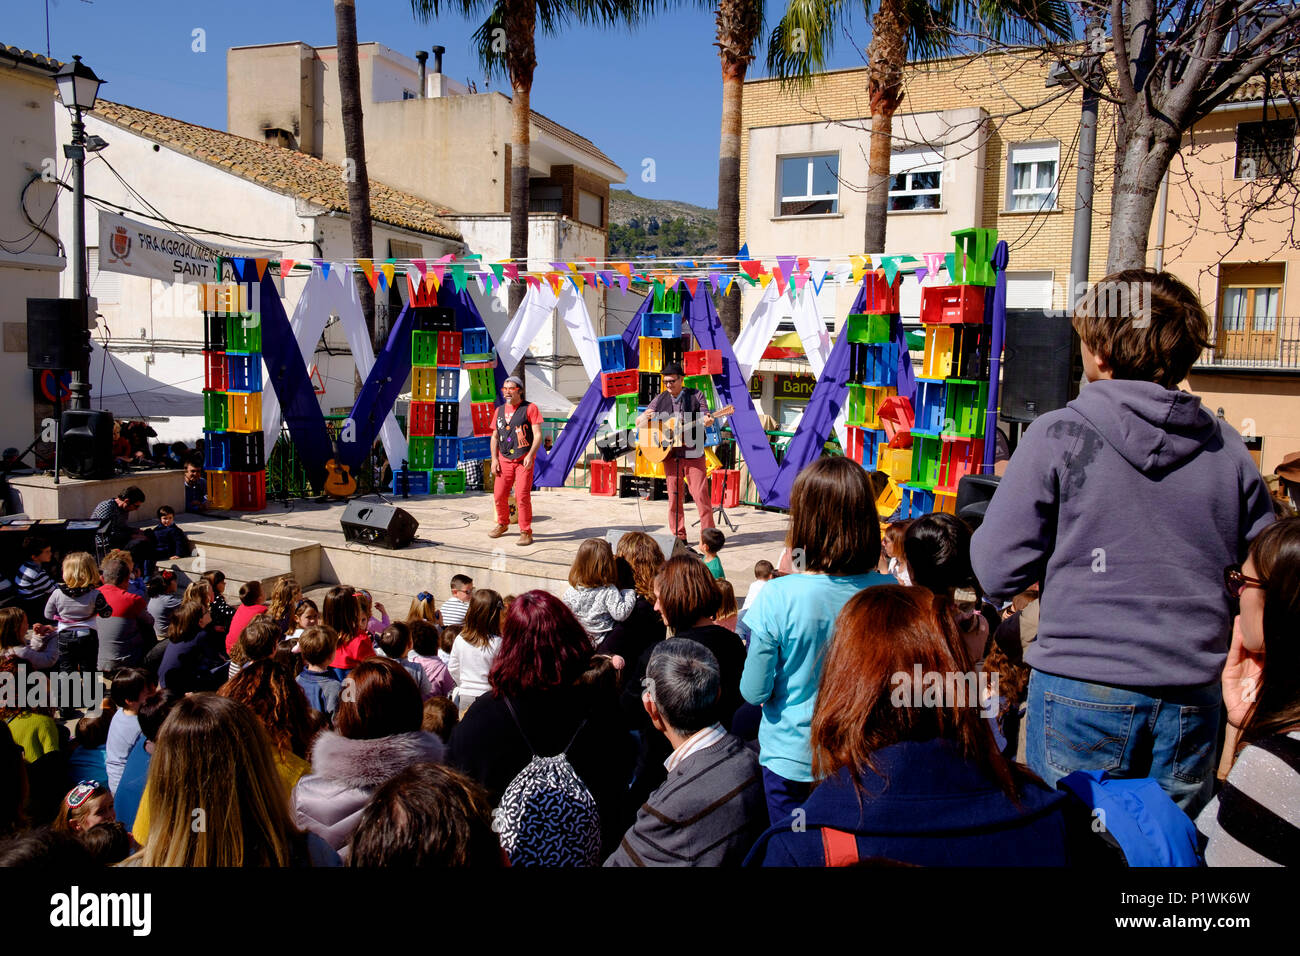 Due animatori commedia su un palcoscenico all'aperto guardato da una folla durante una Fiesta spagnola Foto Stock